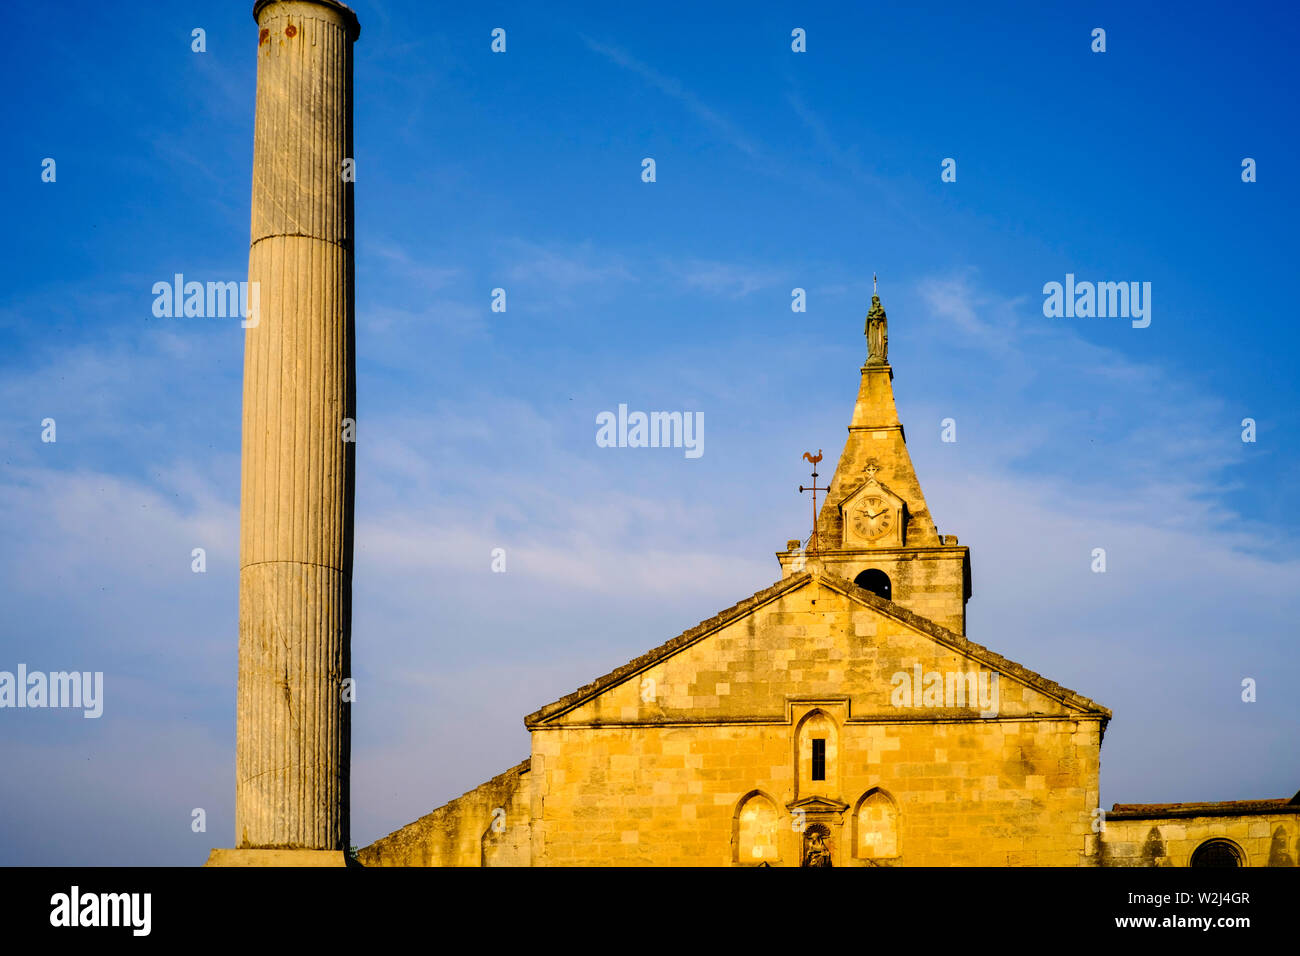 Église de la Major d'Arles (église de la Major, Arles) et la colonne romaine, Ville d'Arles, dans le sud de la France Banque D'Images